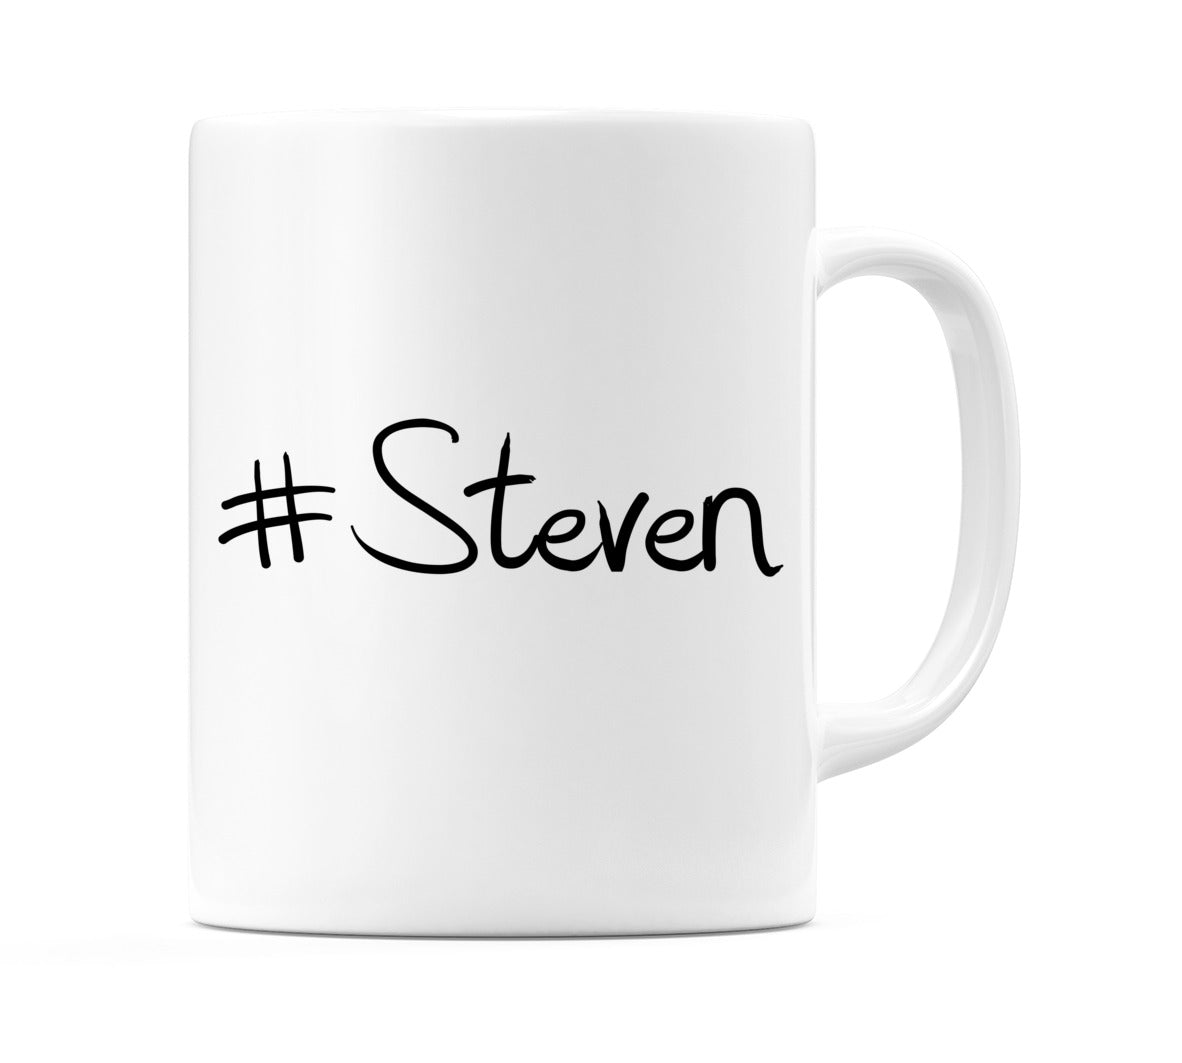 #Steven Mug